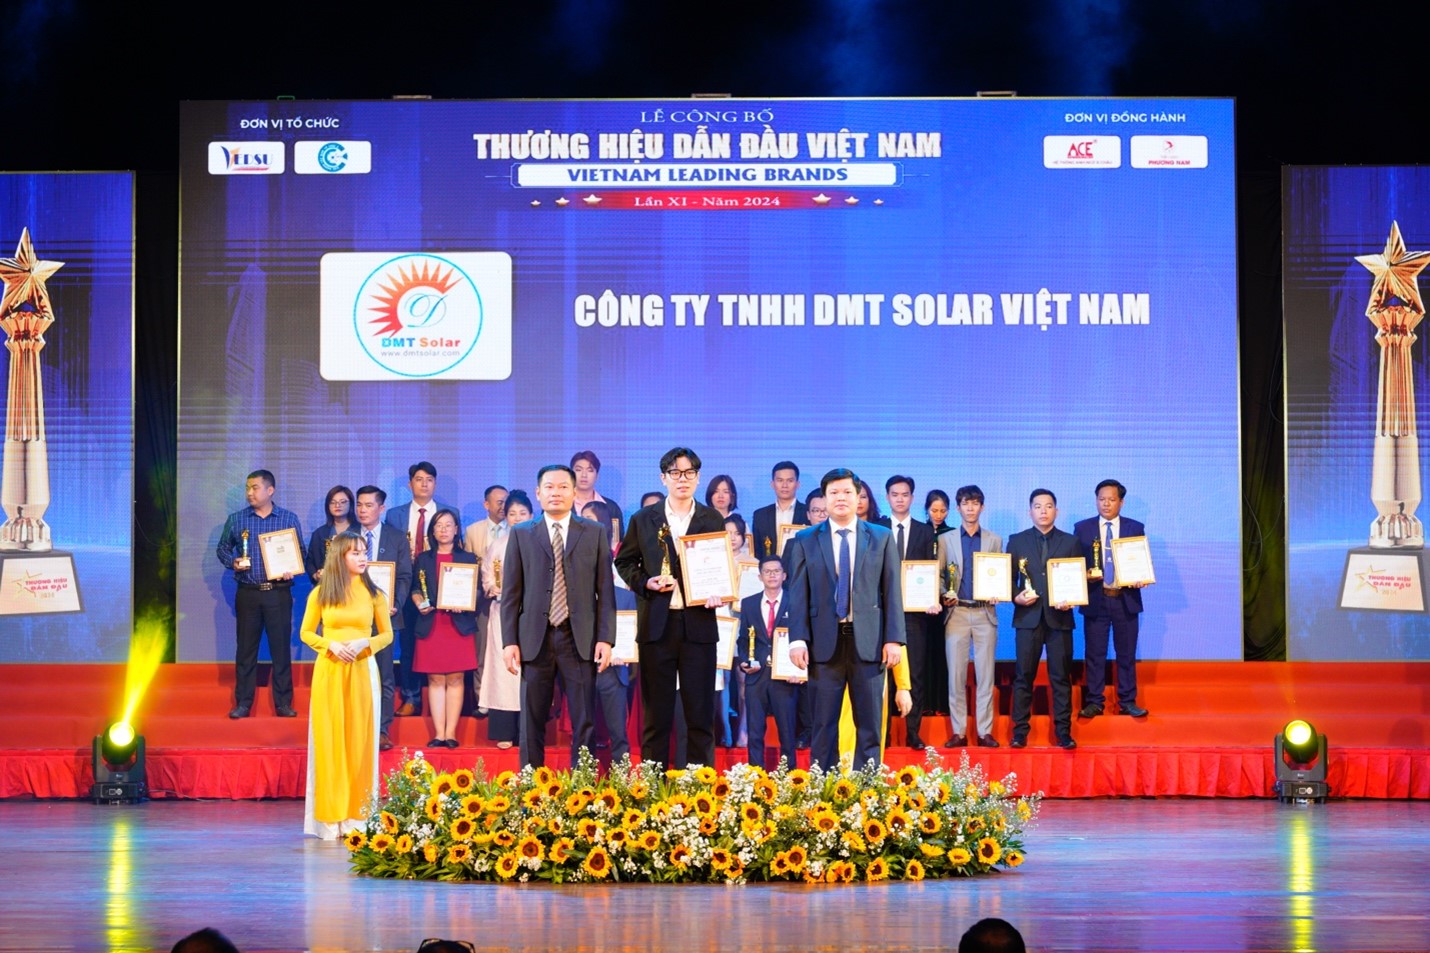 Đại diện DMT Solar lên nhận giải